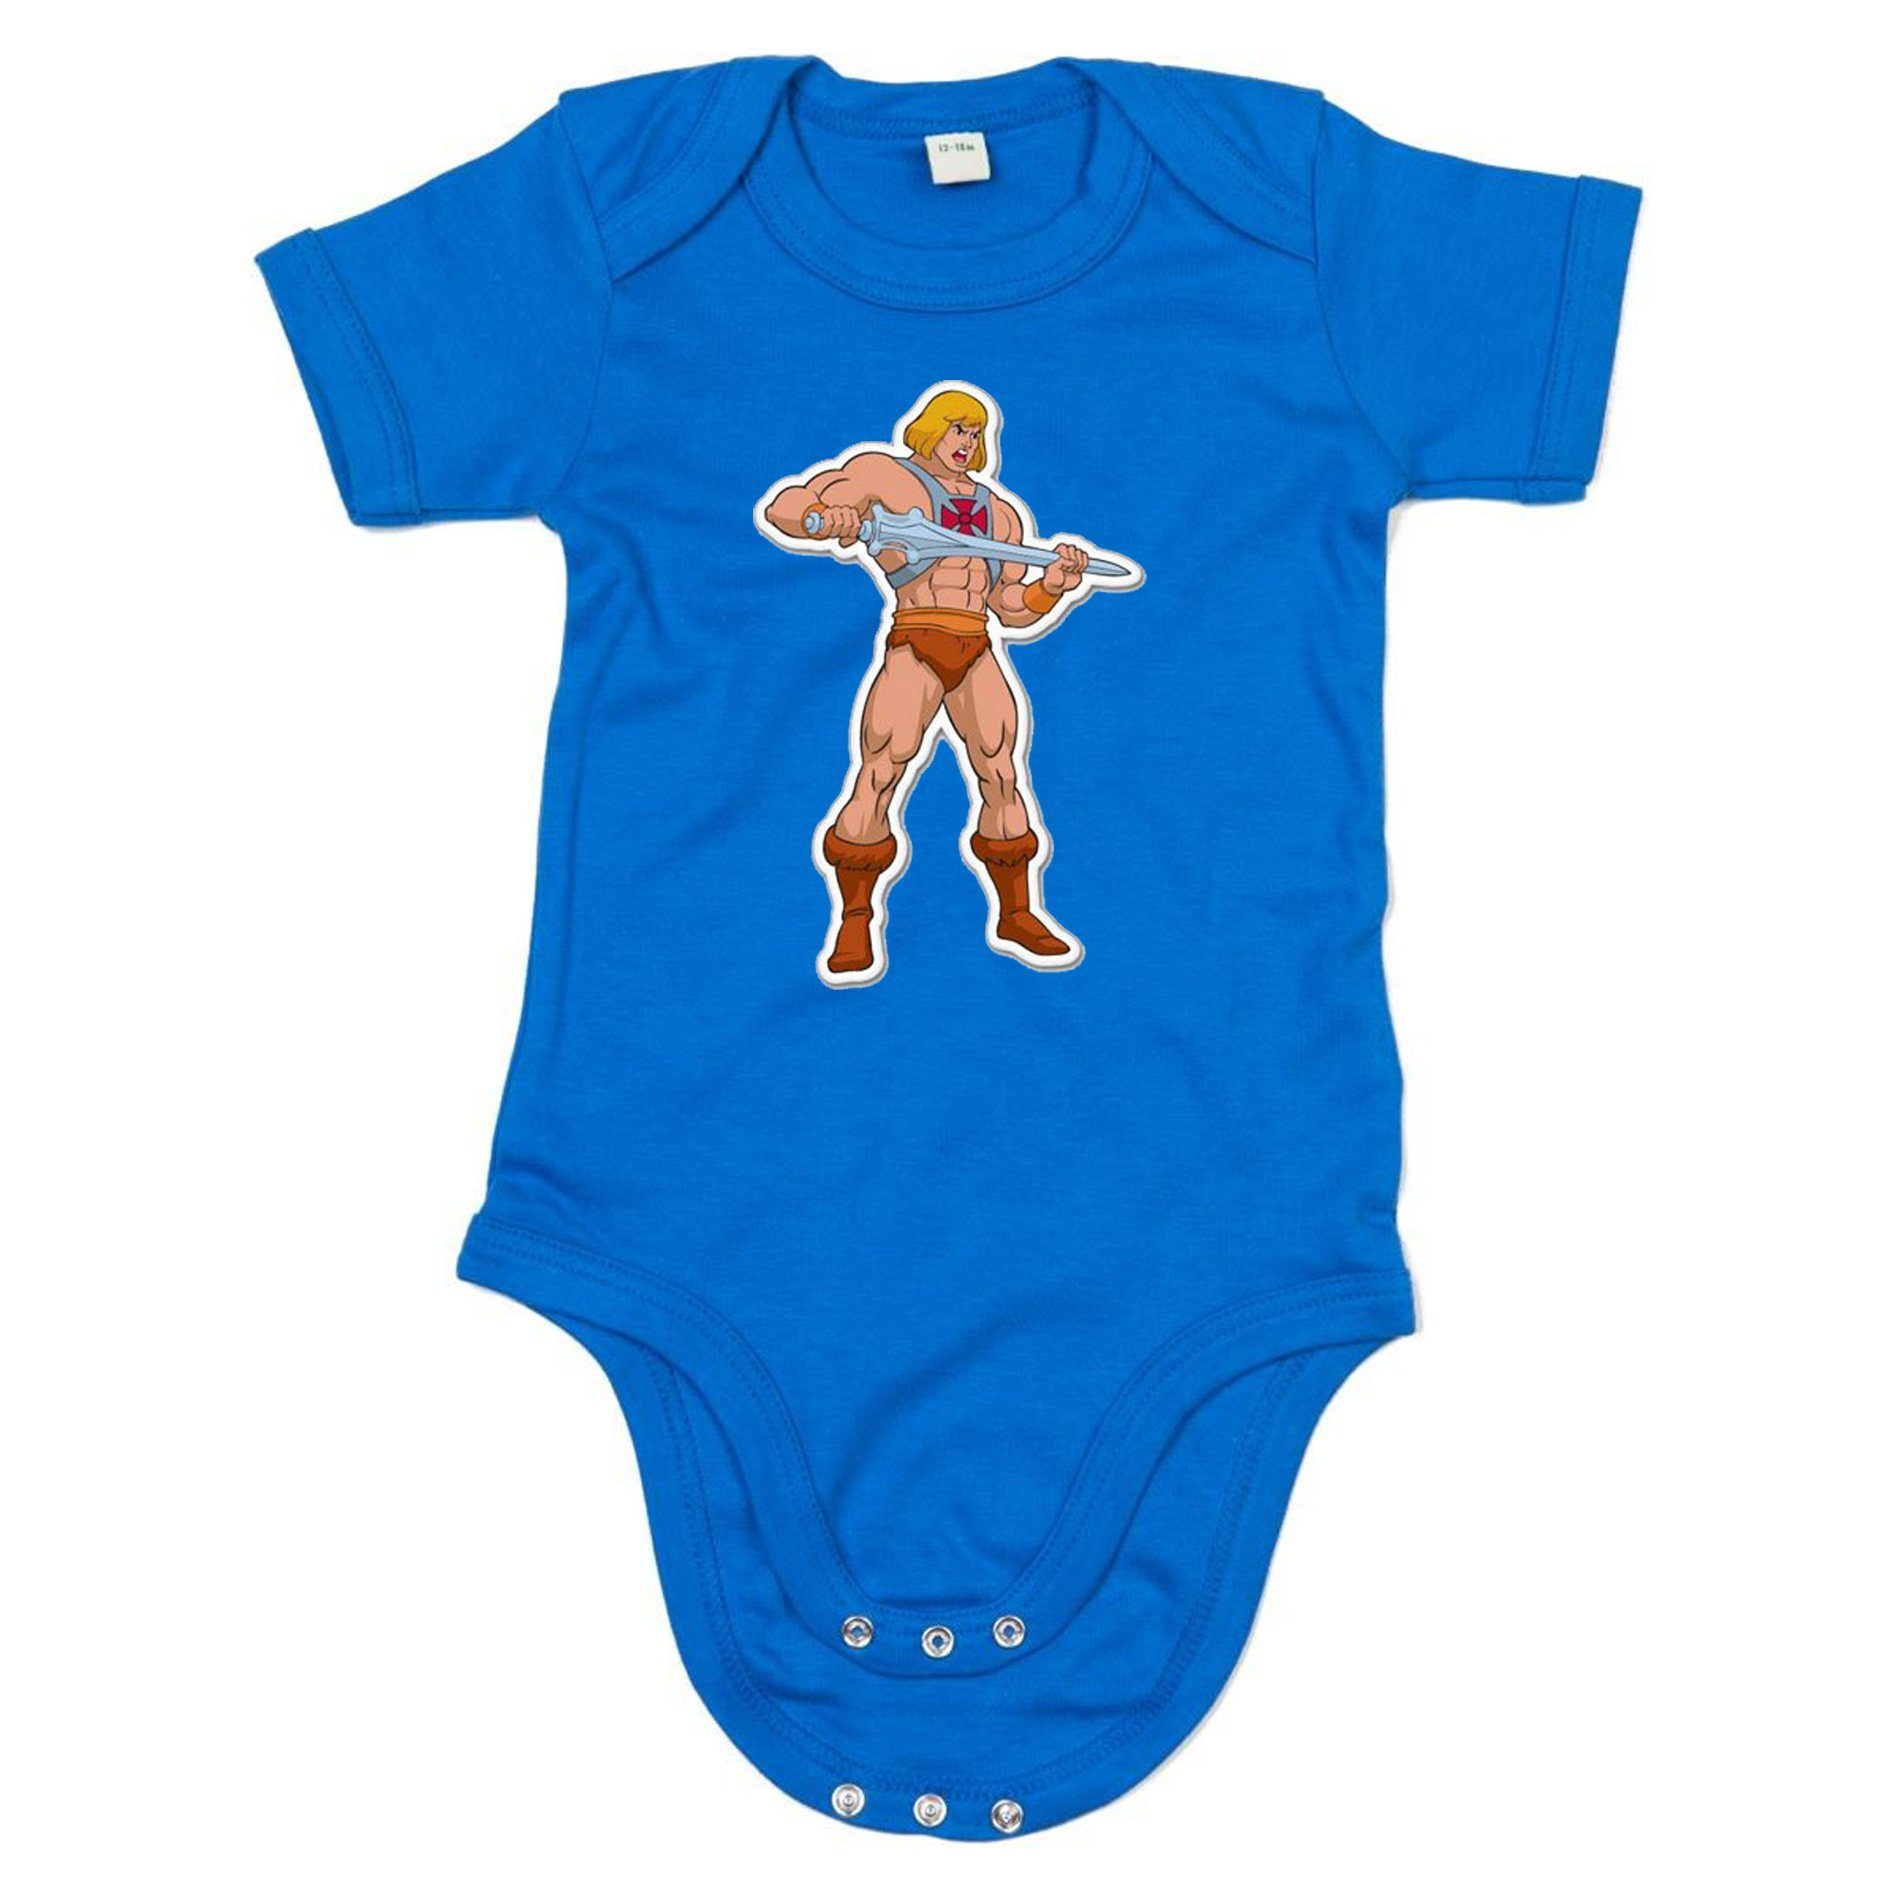 Masters He-Man Blau Kinder of Strampler mit Druckknopf Brownie Baby Universe & The MotU Blondie